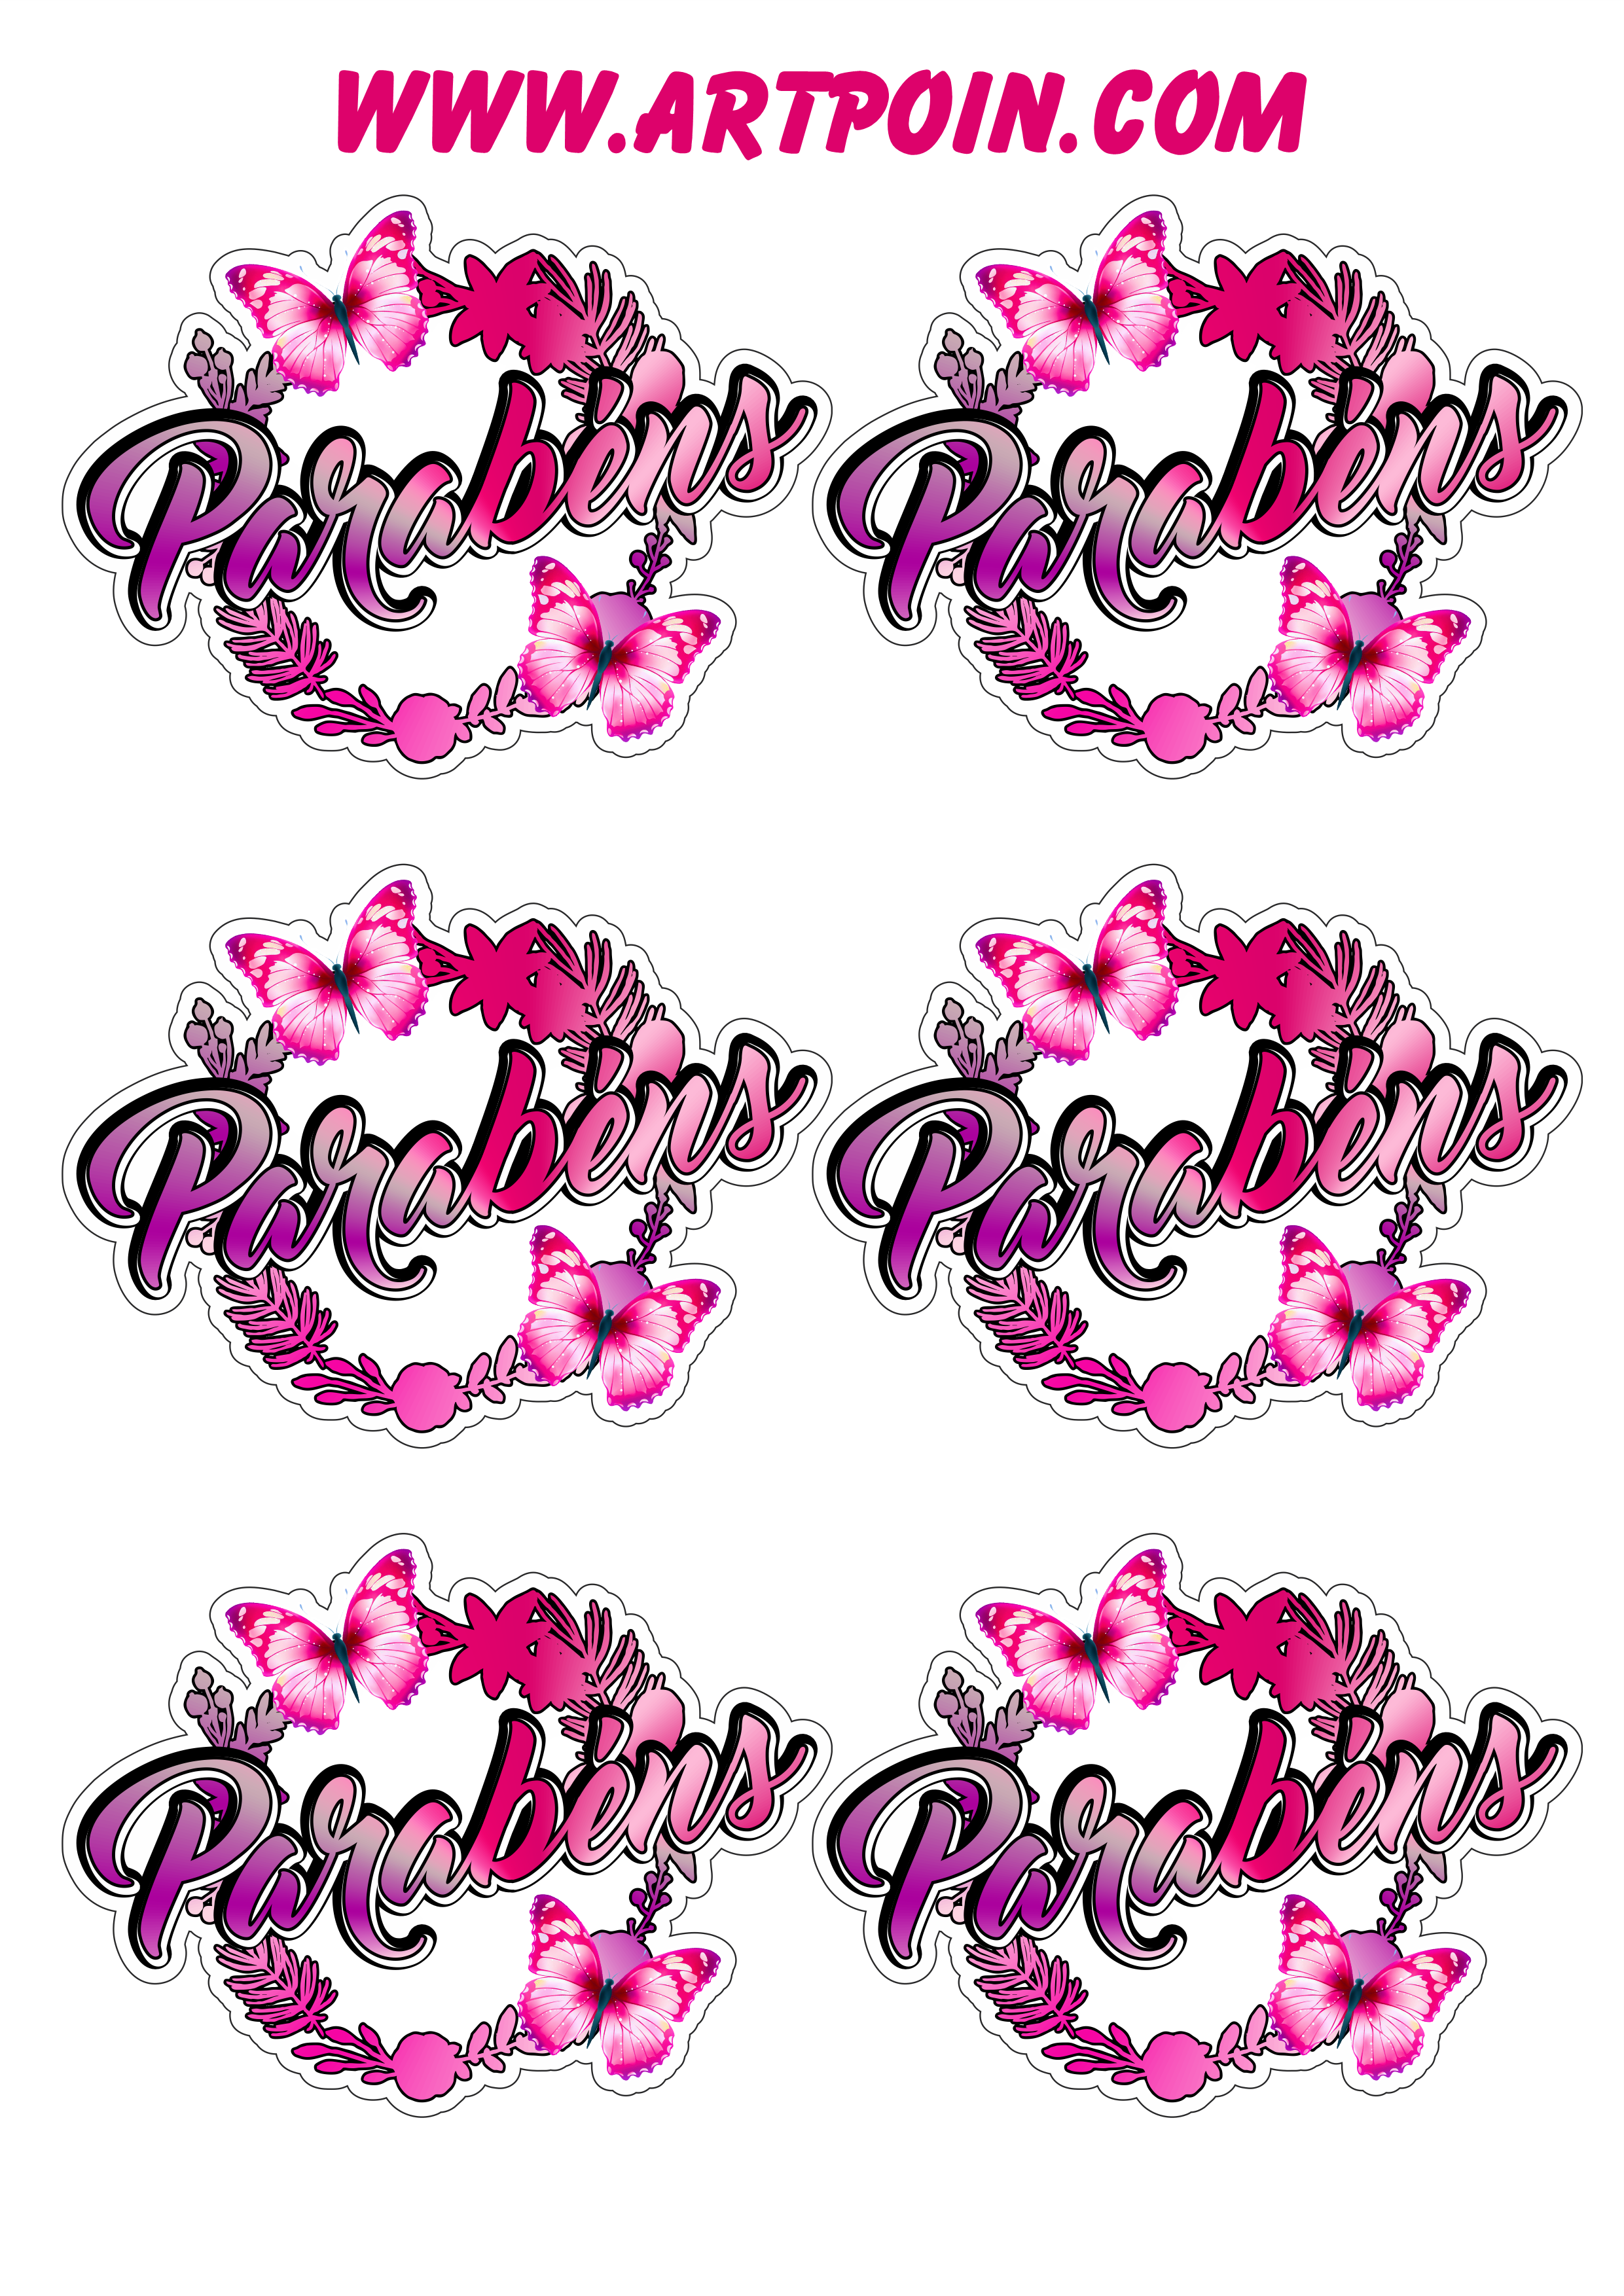 Borboleta colorida adesivos tags stickers com flores aniversário decorado parabéns artes gráficas 6 imagens png